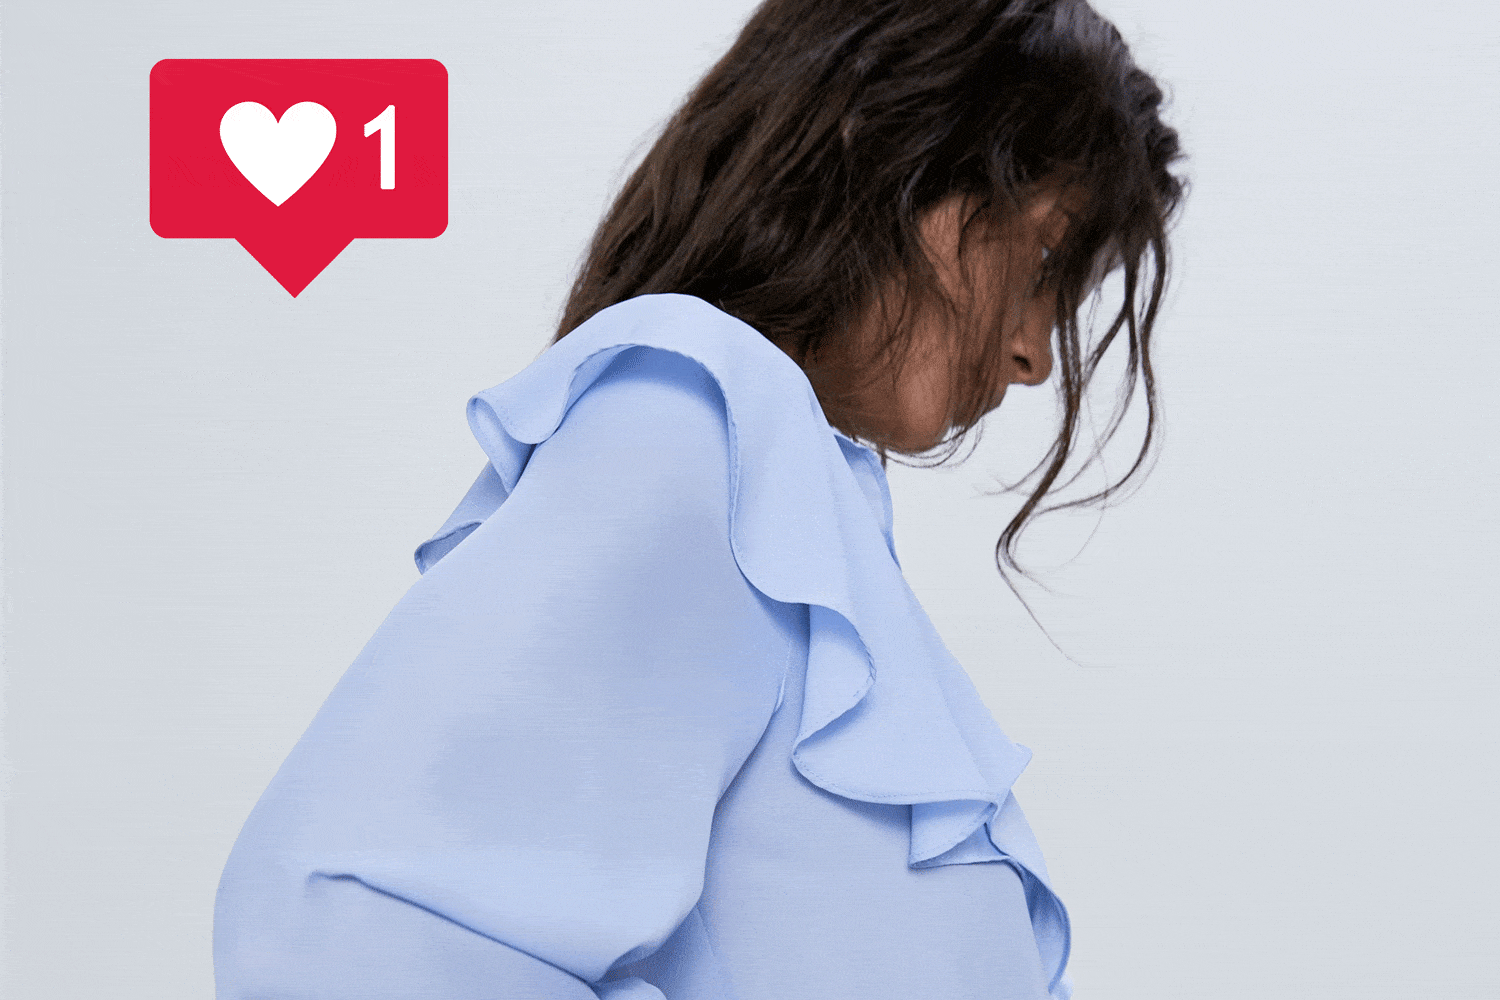 Zara vuelve la blusa volantes celeste más famosa de Instagram